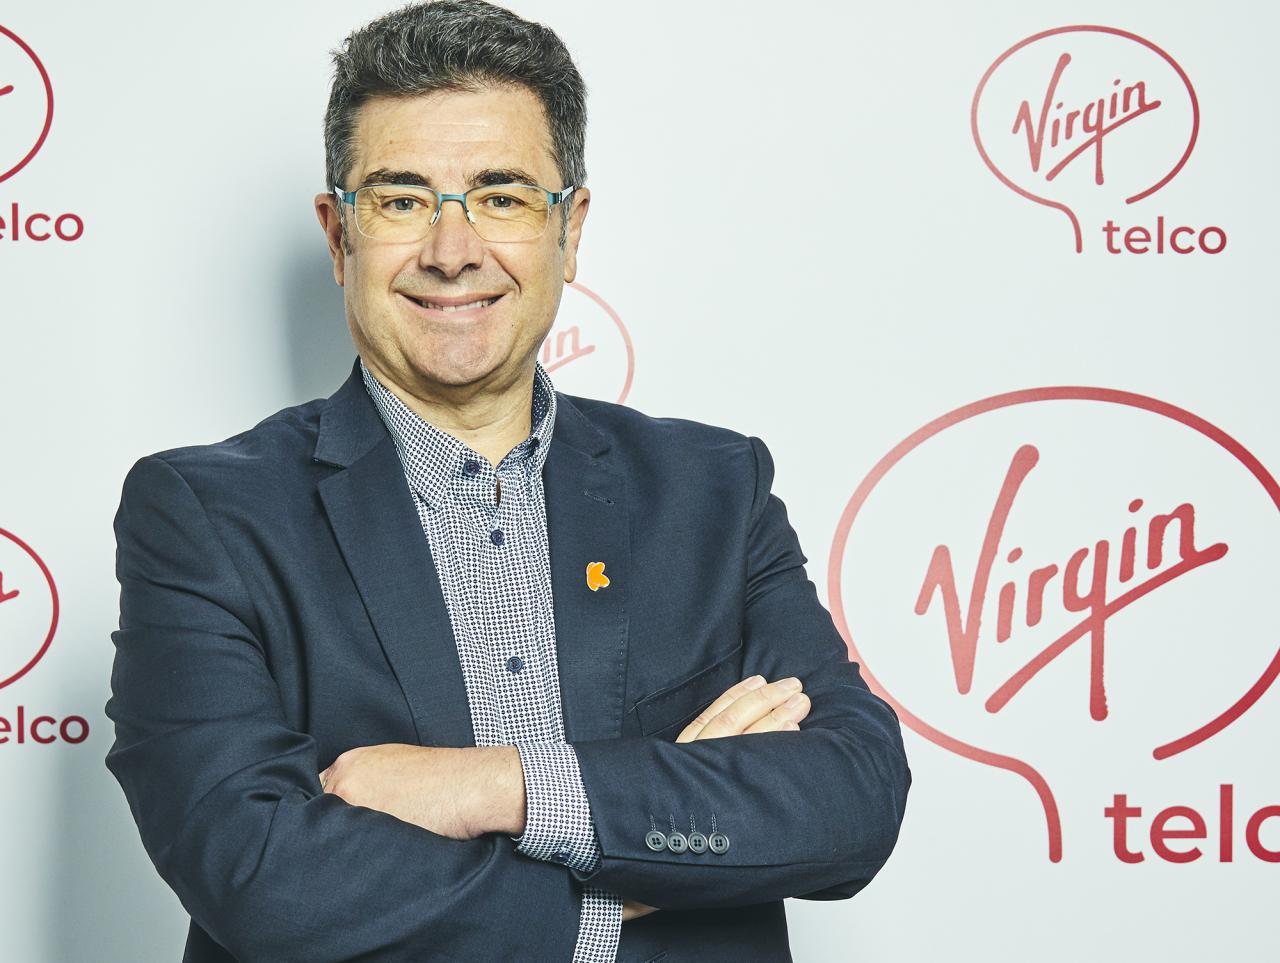 José Miguel García máximo responsable de Virgin telco y consejero delegado de Grupo Euskaltel